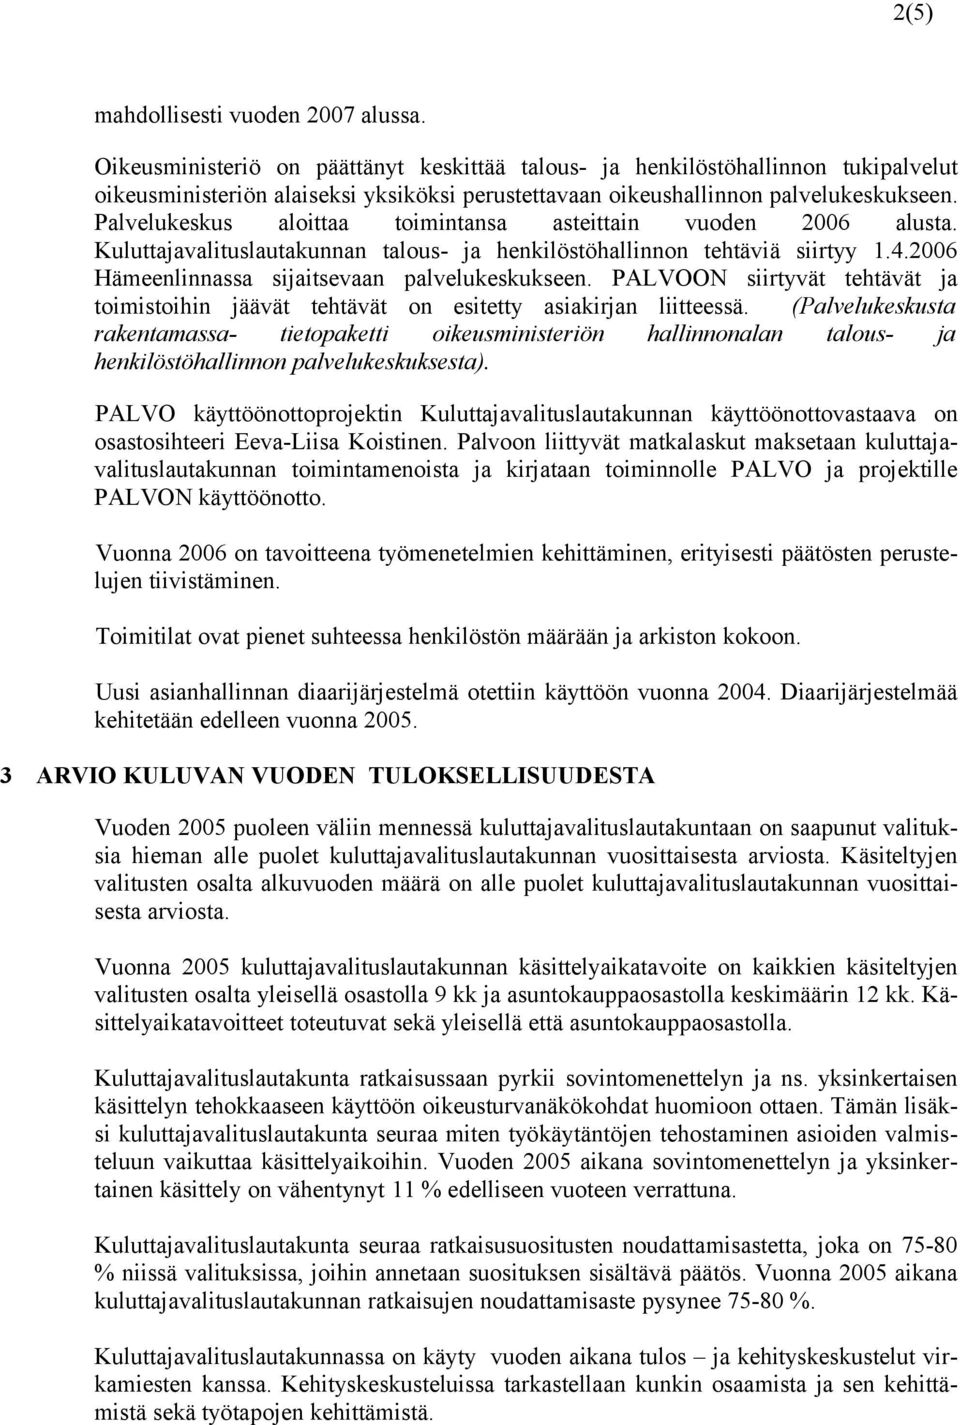 Palvelukeskus aloittaa toimintansa asteittain vuoden 2006 alusta. Kuluttajavalituslautakunnan talous- ja henkilöstöhallinnon tehtäviä siirtyy 1.4.2006 Hämeenlinnassa sijaitsevaan palvelukeskukseen.